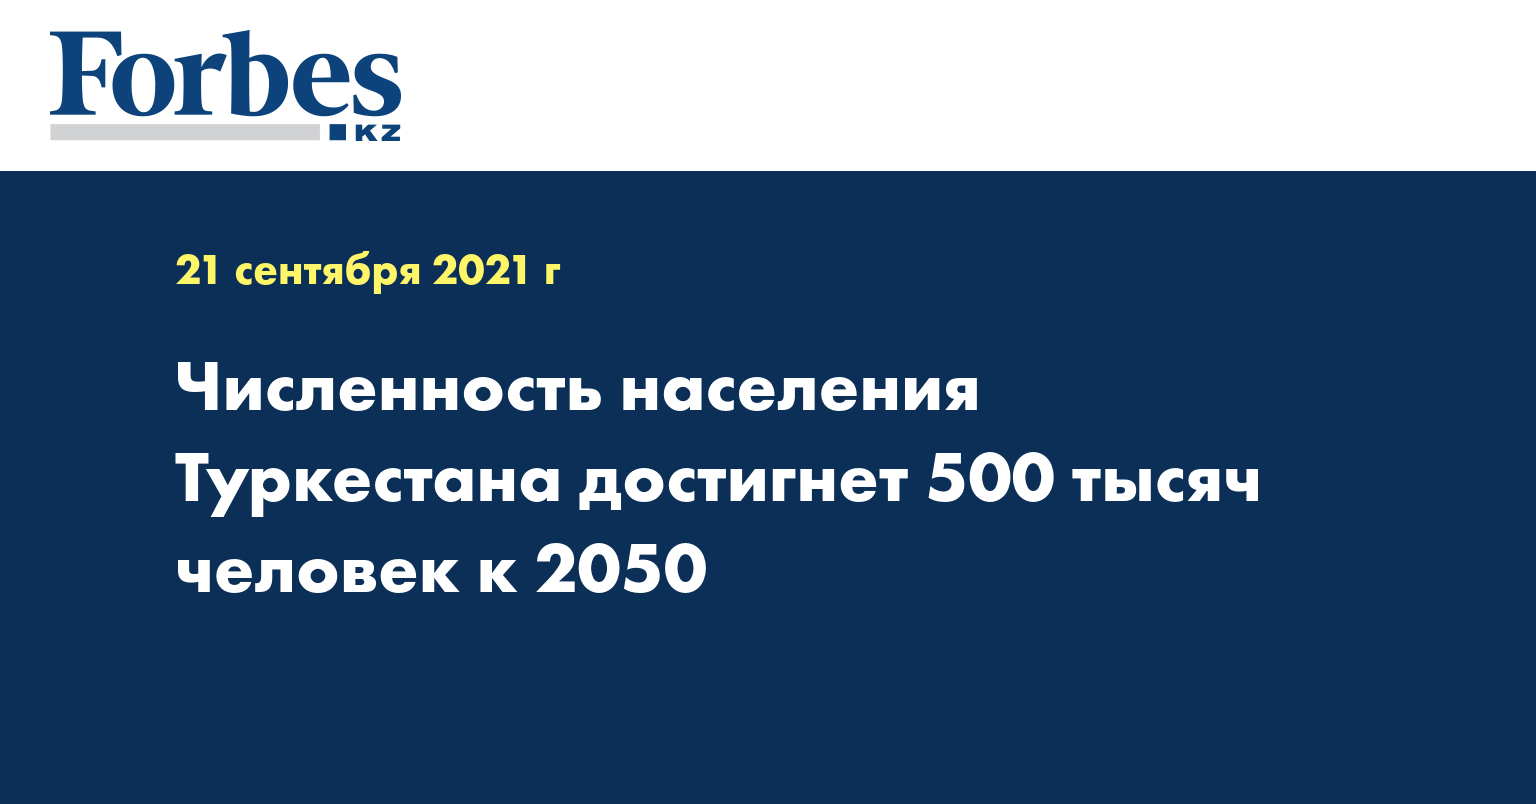  Численность населения Туркестана достигнет 500 тысяч человек к 2050